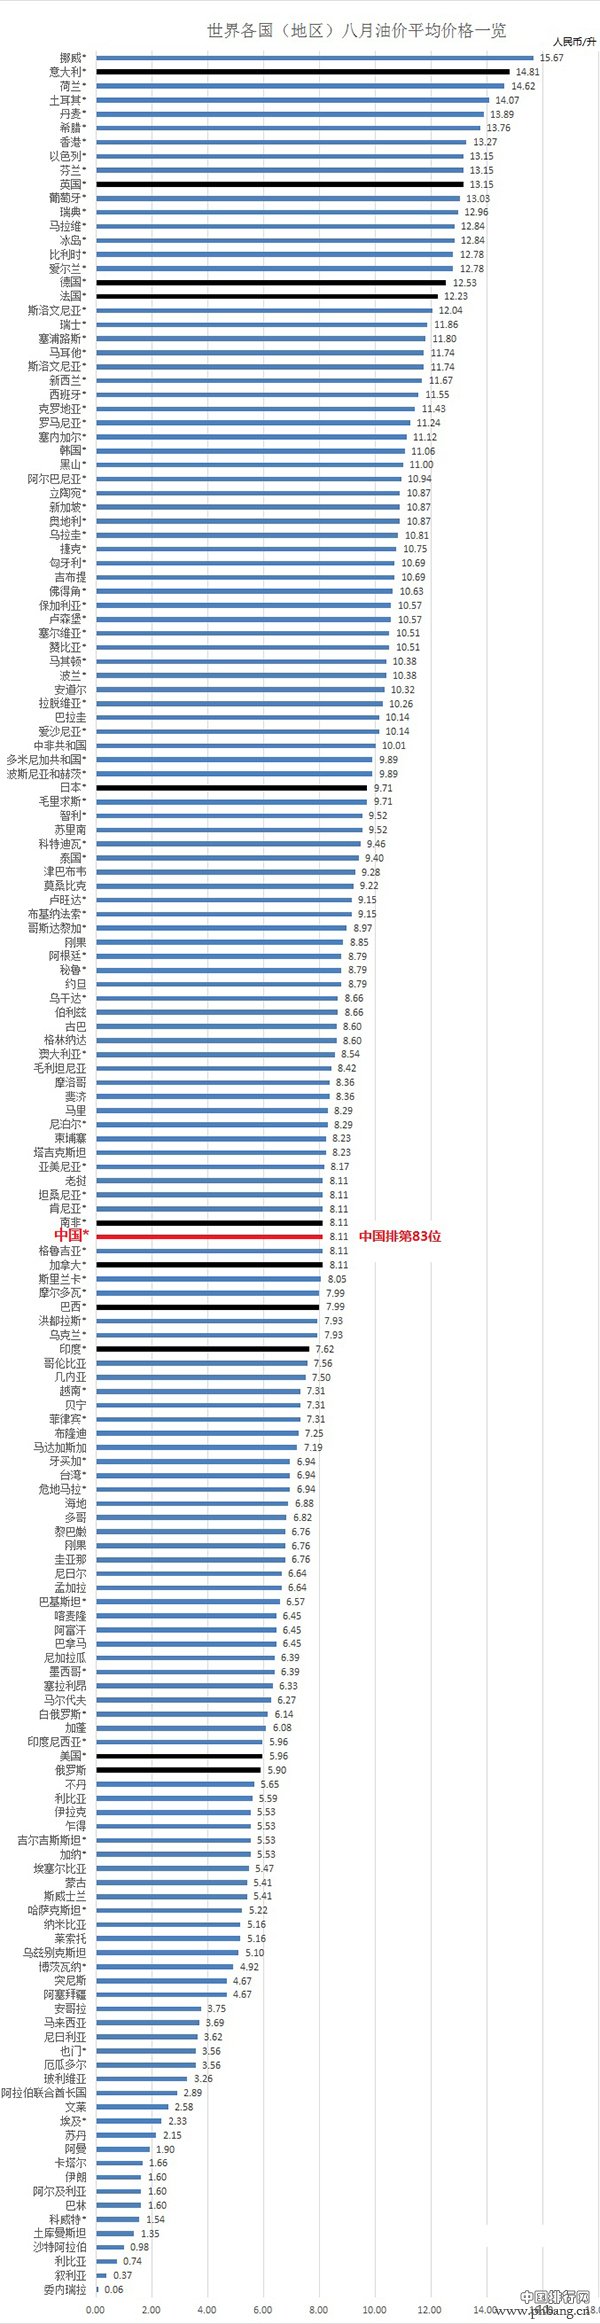 2014年全球各国油价排行榜:中国排名第83